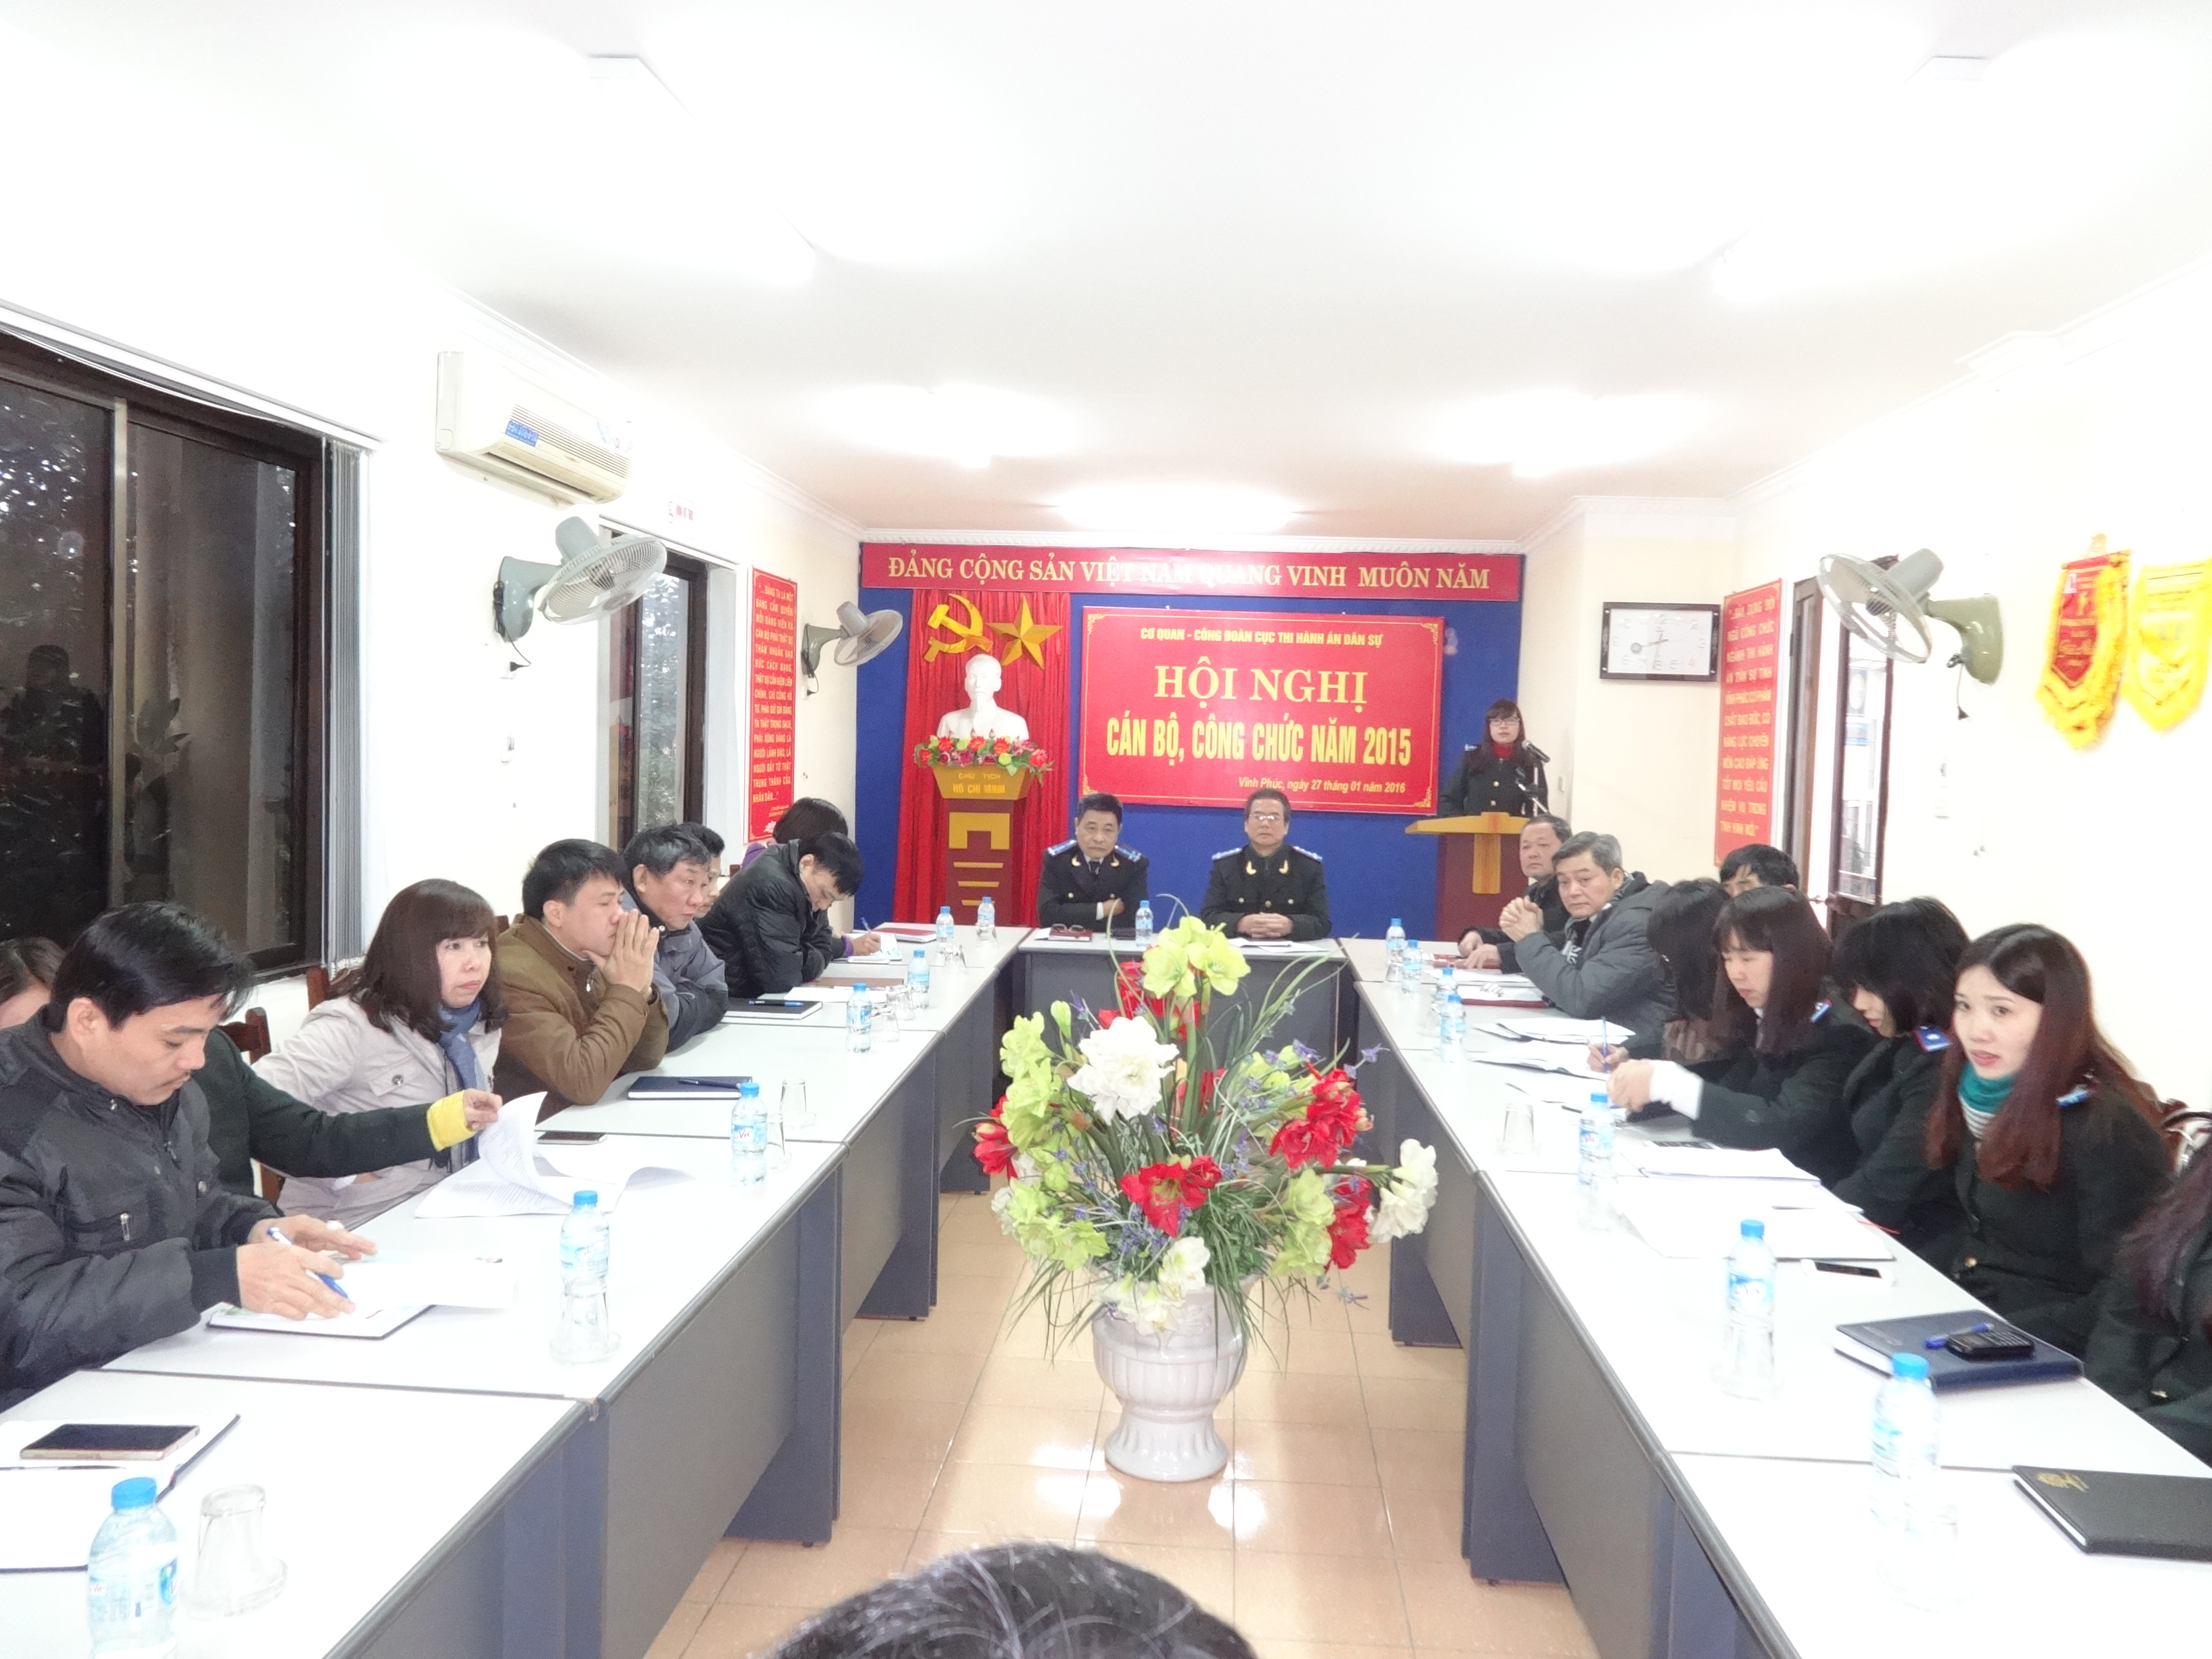 Cục Thi hành án dân sự tỉnh Vĩnh Phúc tổ chức Hội nghị cán bộ, công chức năm 2015